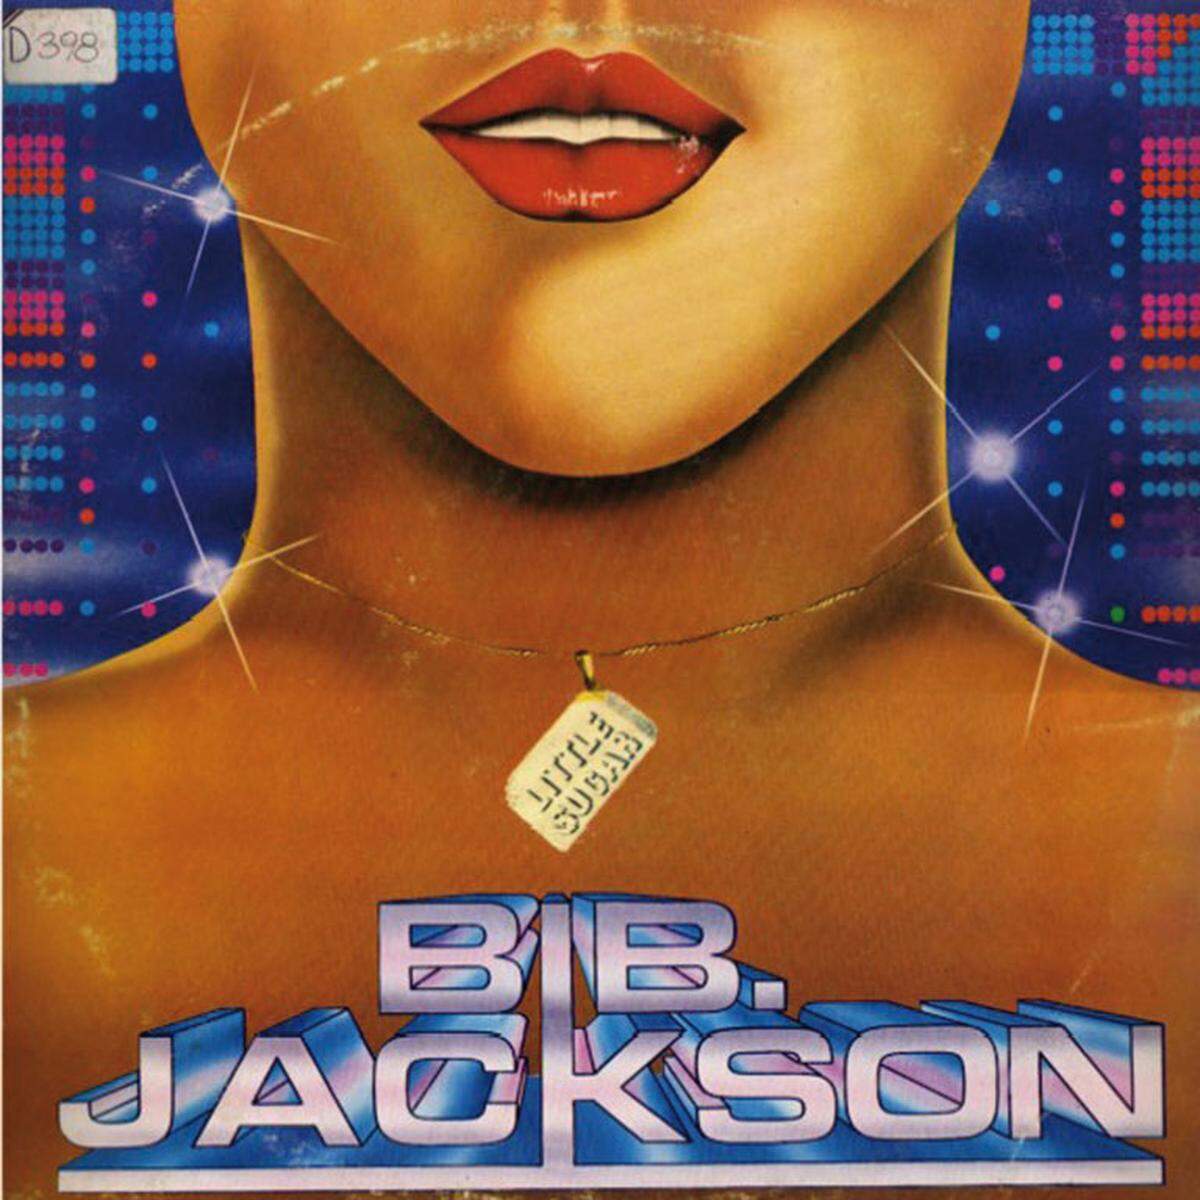 BIB Jackson: "BIB Jackson"